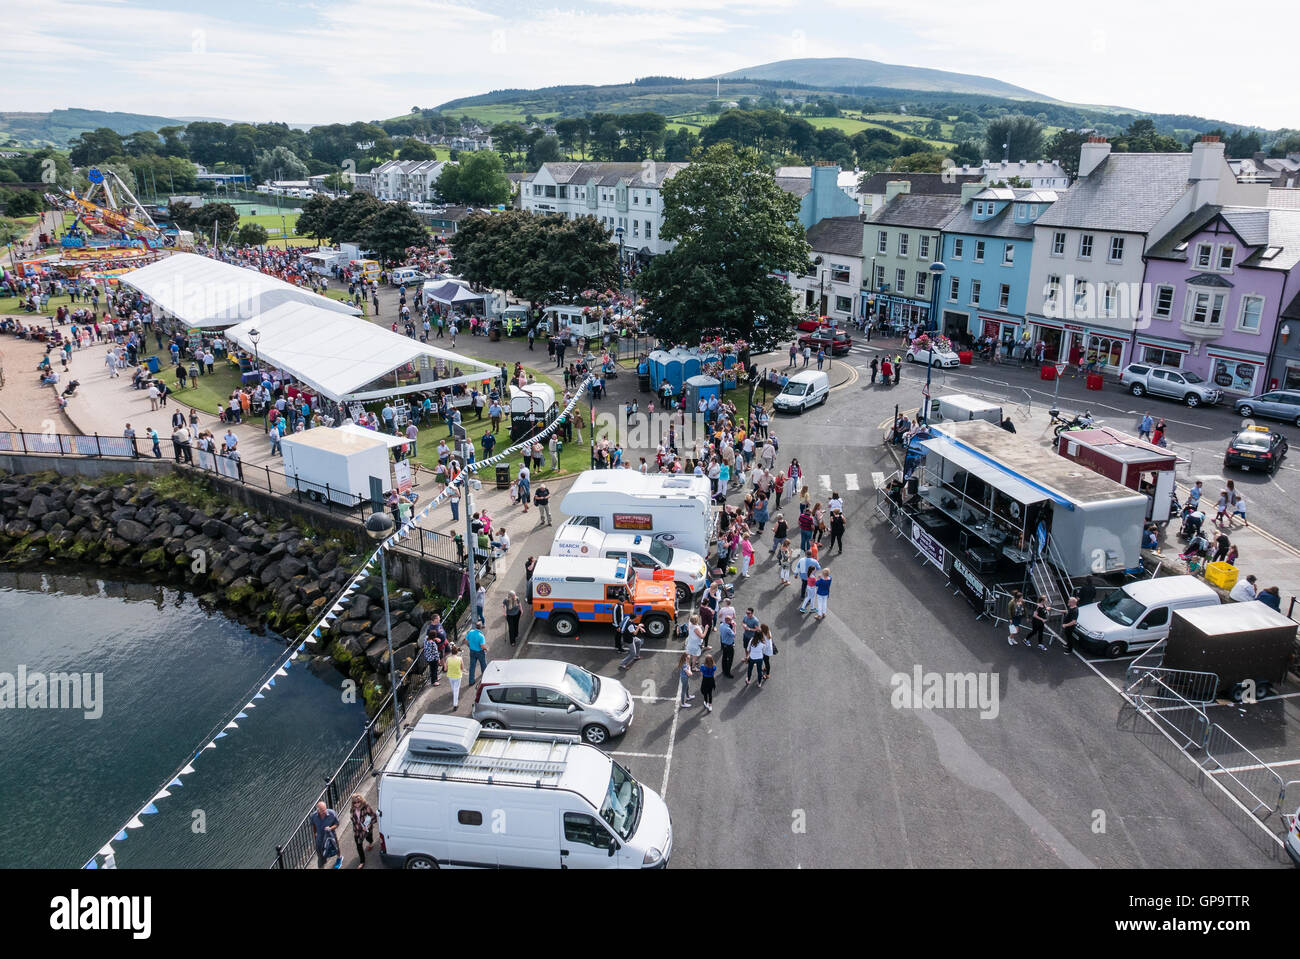 Les foules emplissent les rues de Ballycastle, à l'assemblée annuelle de l'Auld Lammas Fair, juste la plus ancienne dans le monde. Banque D'Images